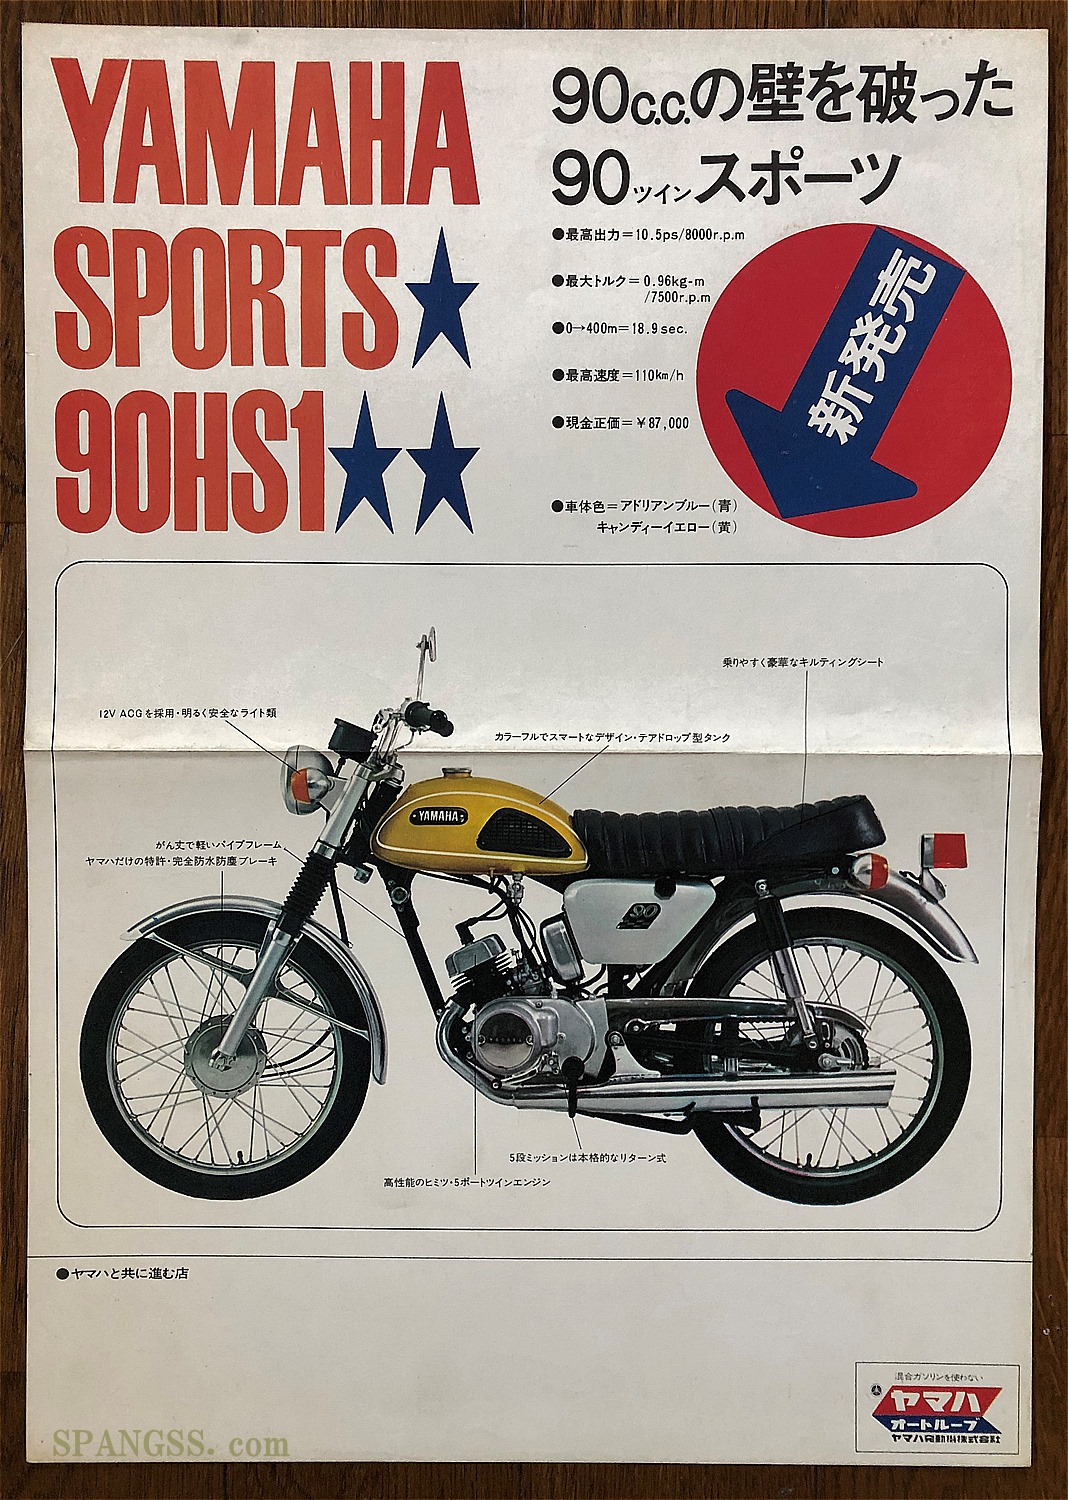 旧車 絶版車 1970年90ccロードスポーツ バイク４メーカーが10 5馬力でガチンコ勝負 カワサキ90ss ヤマハhs1 スズキウルフ90 ホンダベンリイcb90 ライフスタイルのwebメディア Spangss スパングス